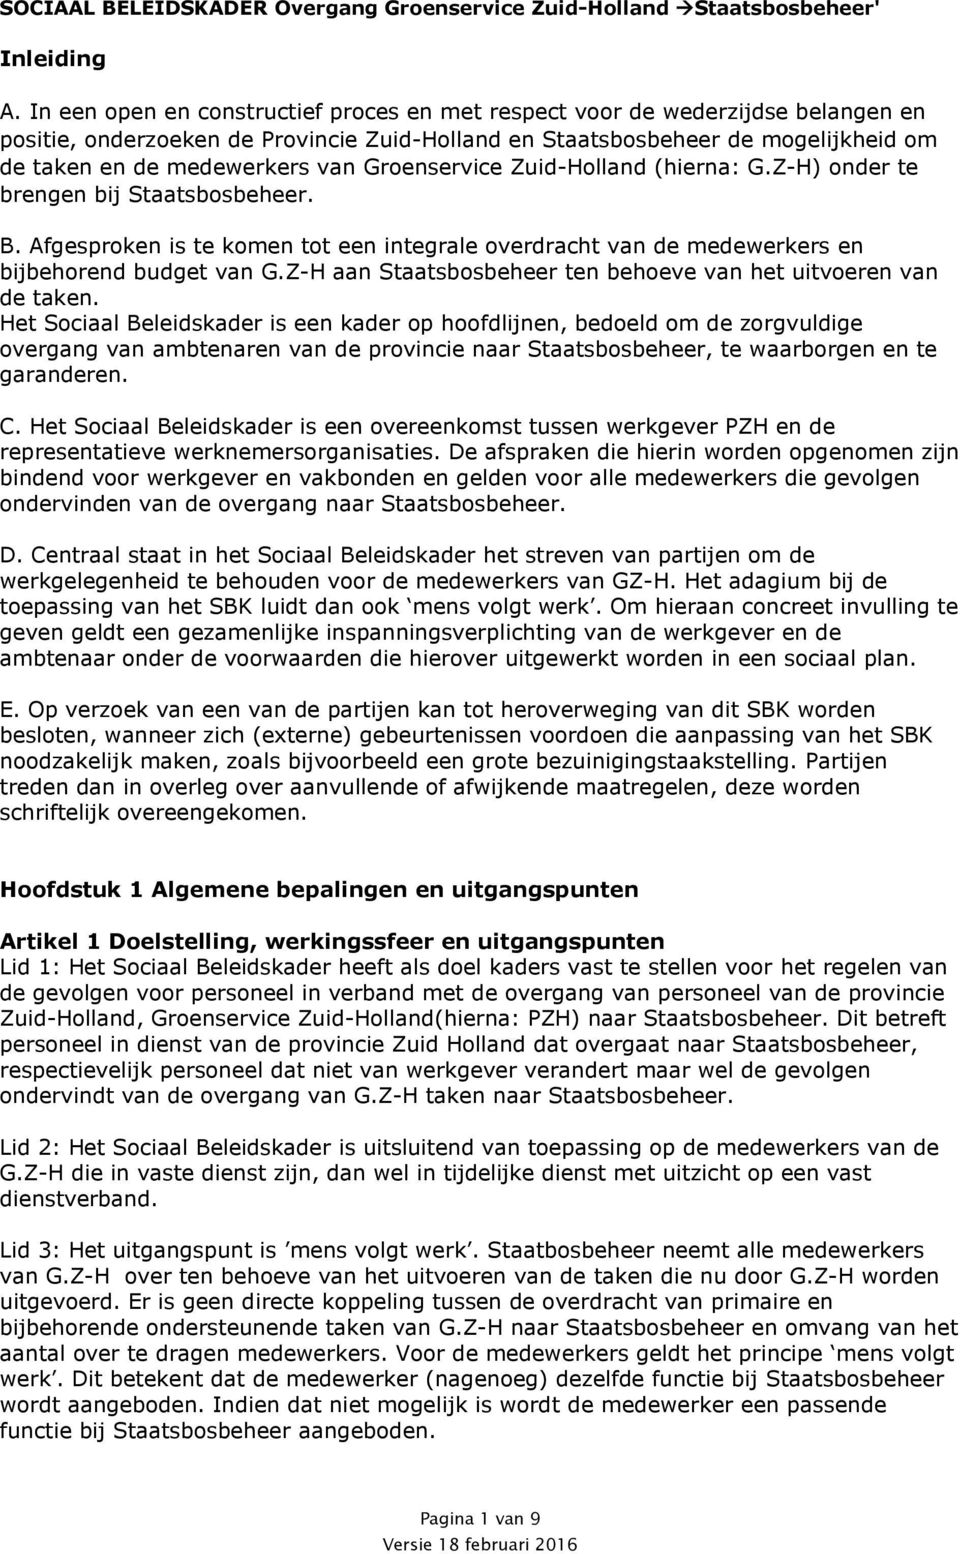 Groenservice Zuid-Holland (hierna: G.Z-H) onder te brengen bij B. Afgesproken is te komen tot een integrale overdracht van de medewerkers en bijbehorend budget van G.